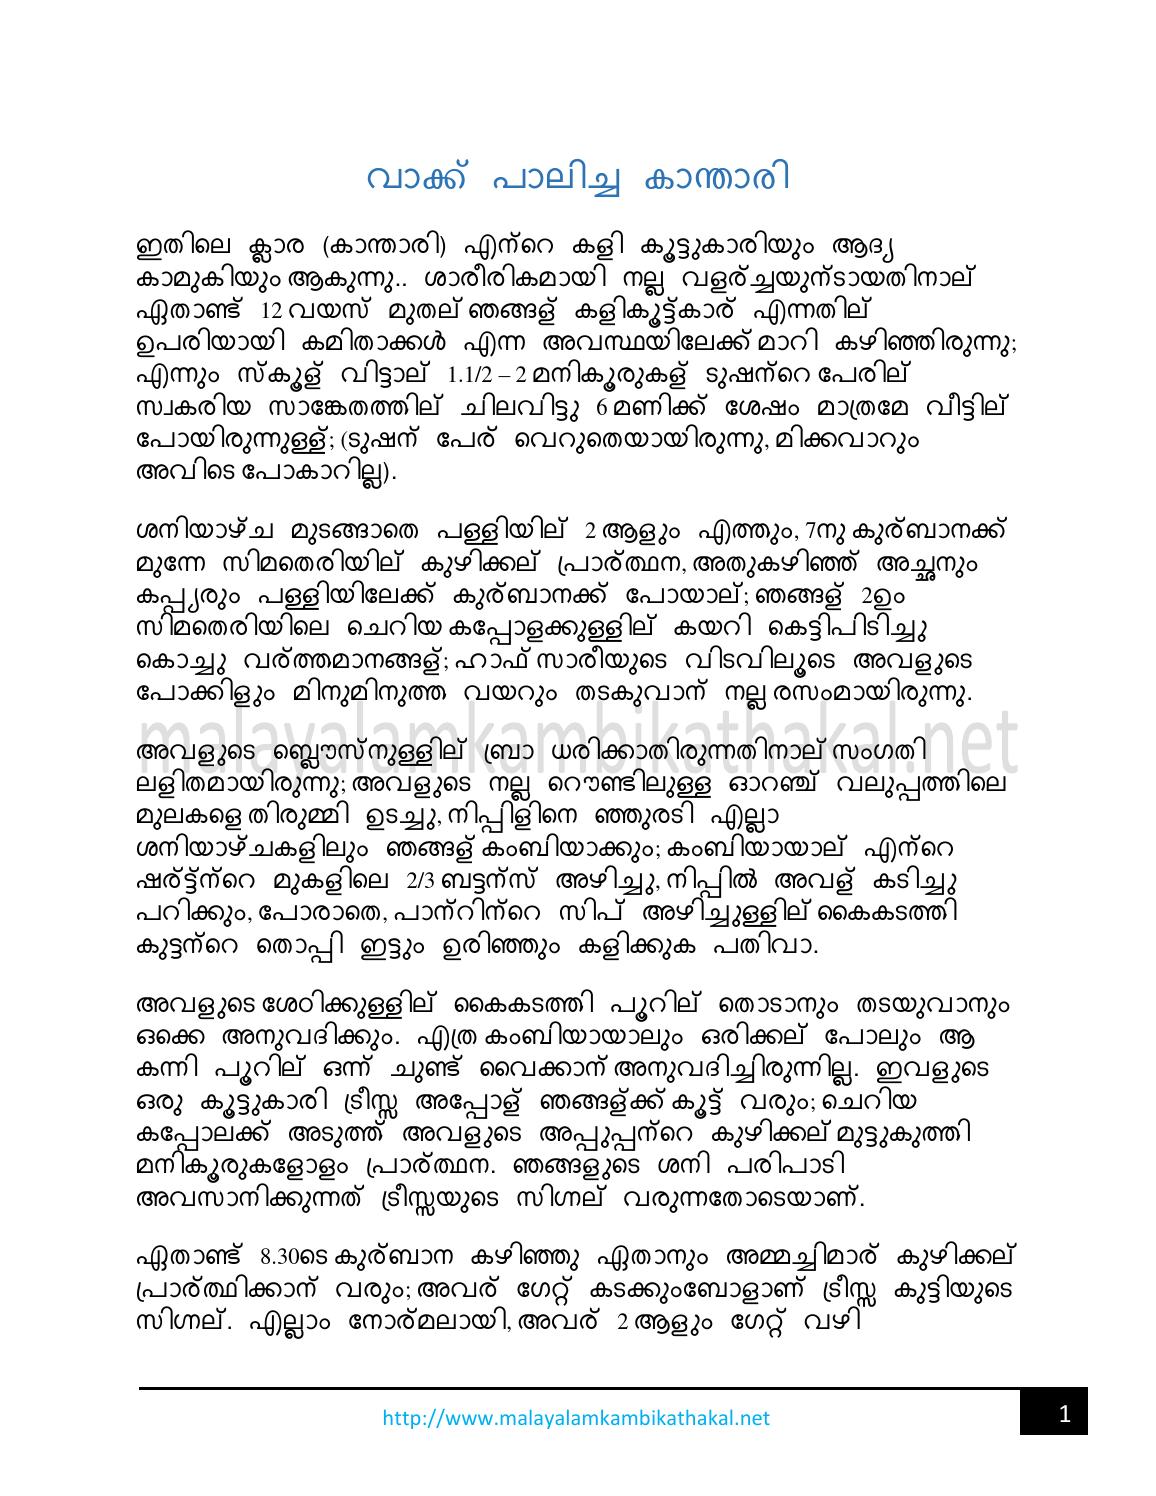 malayalam kambikathakal pdf free download